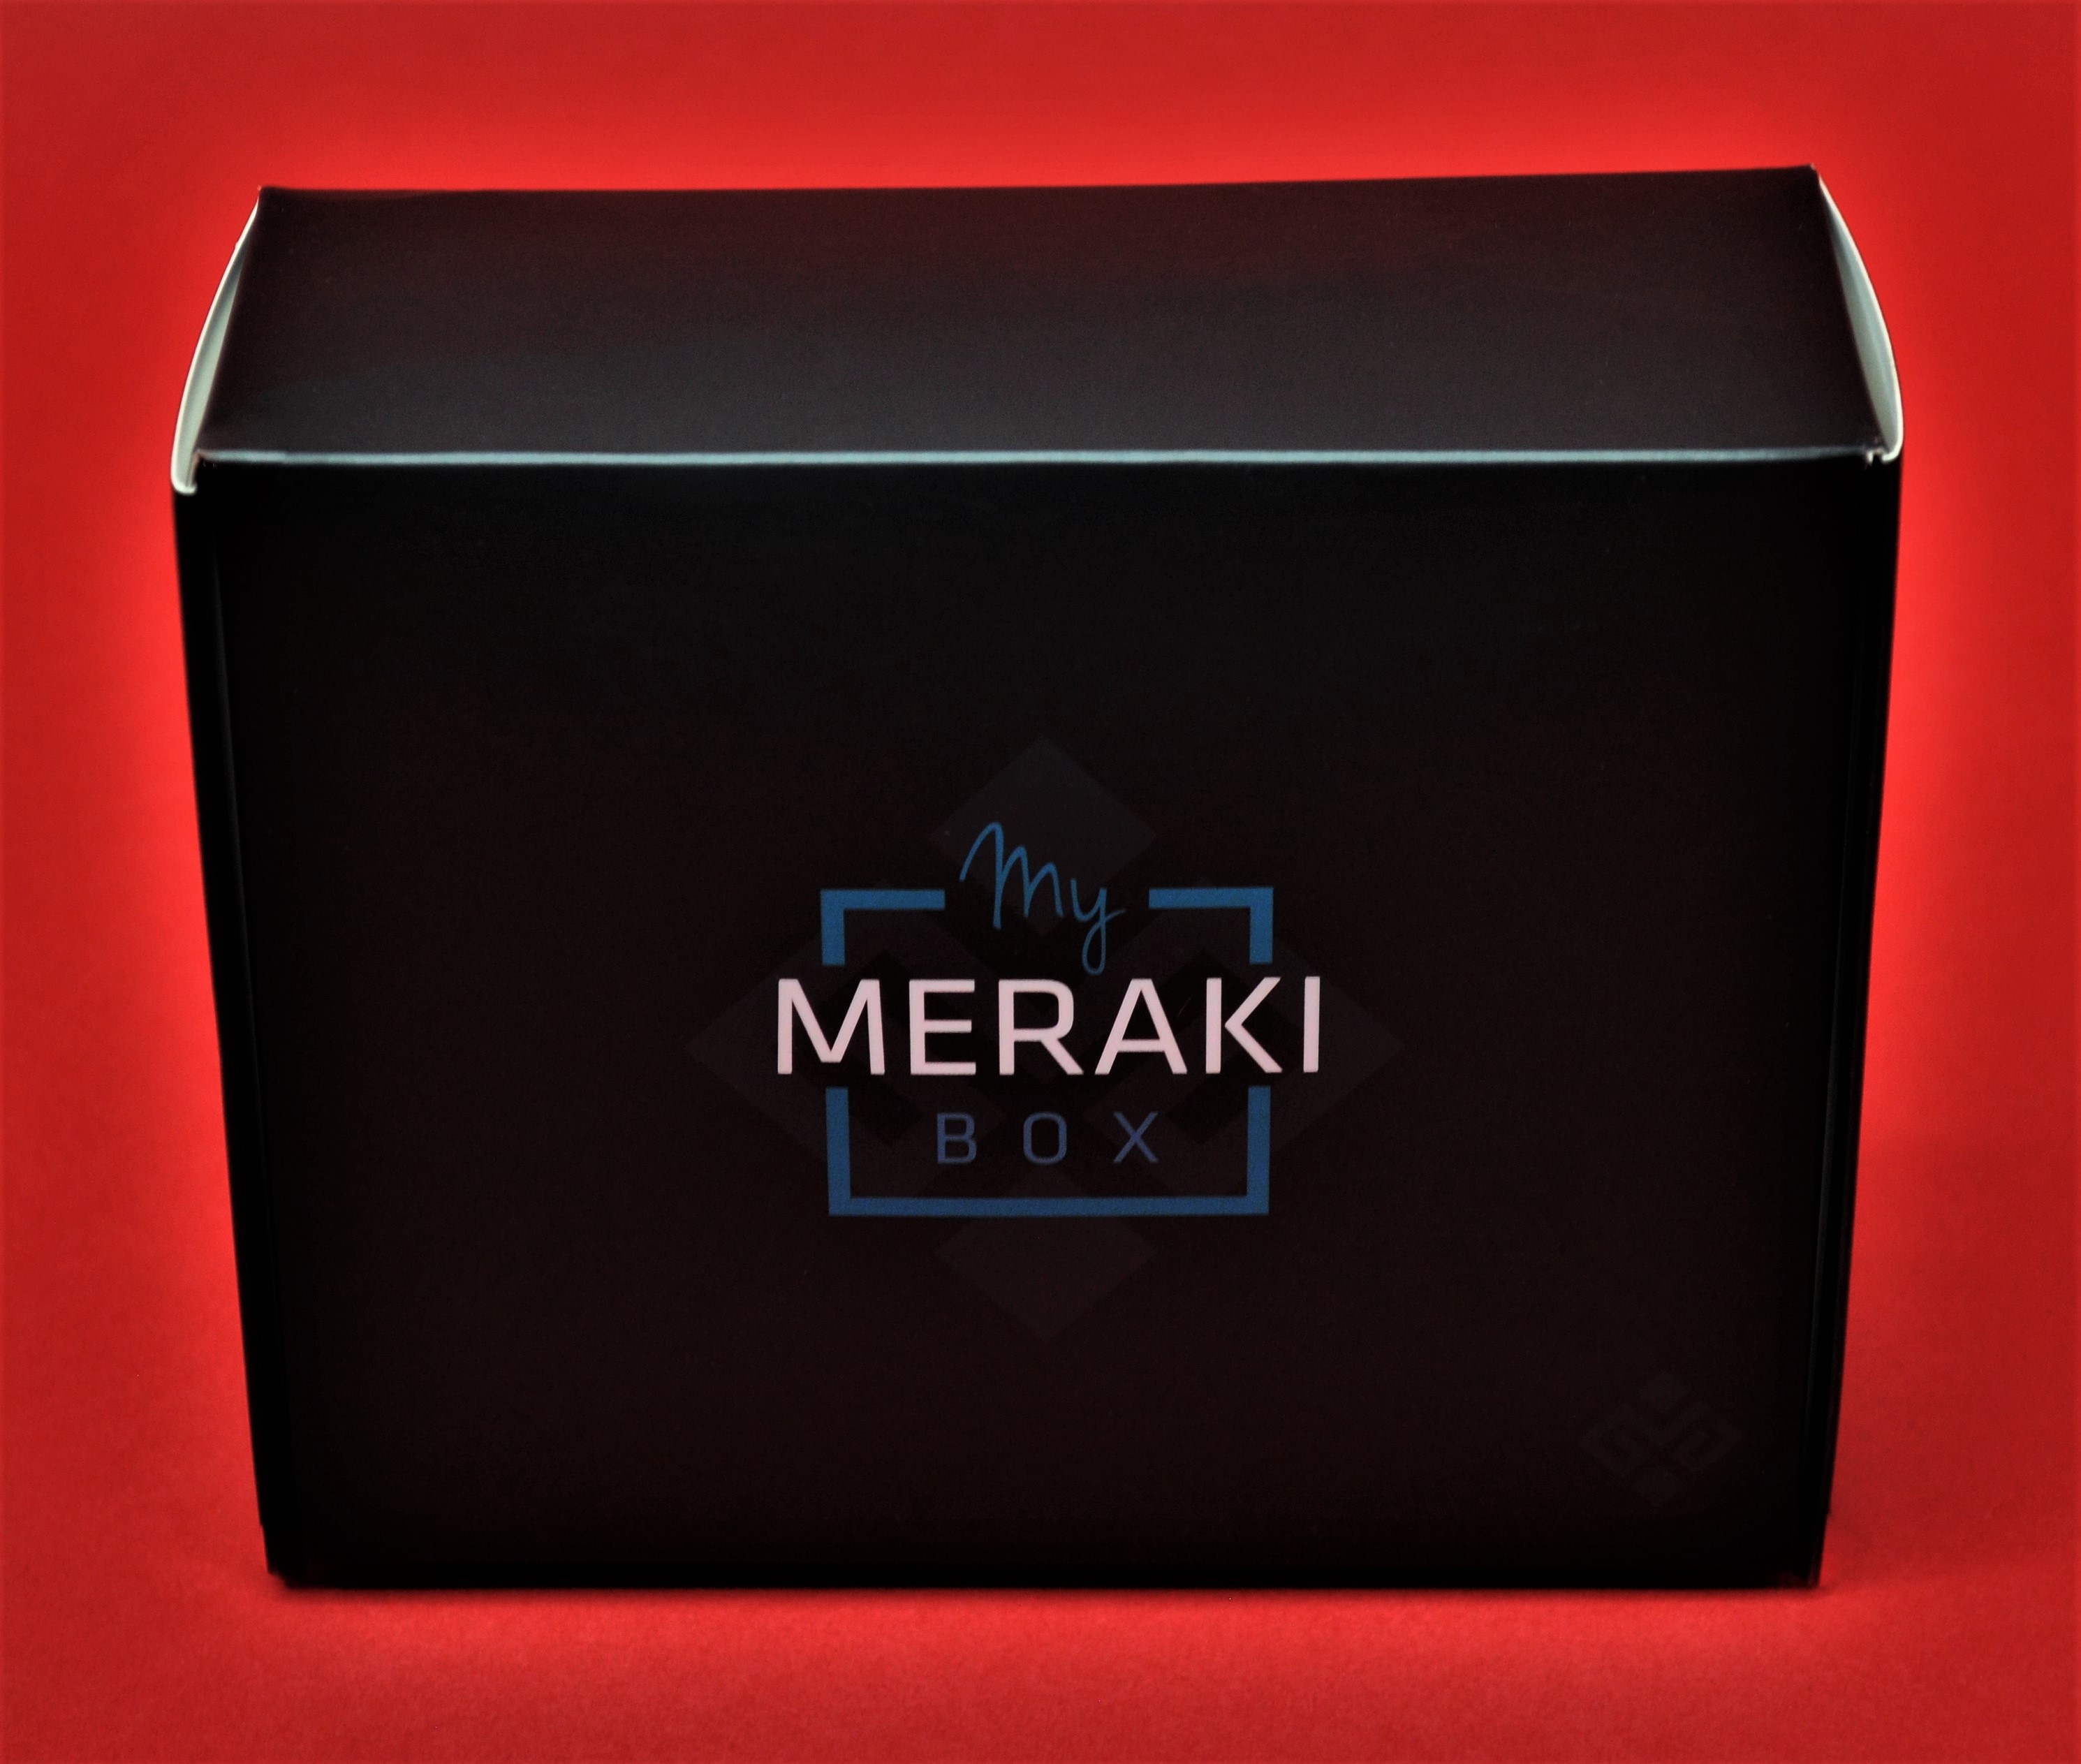 My Meraki Box; My Meraki; Wristicuffs; Box Subscription; Subscription Box; Bling; Jewelry Box; Jewelry Subscription Box; Boho Jewelry; Wristicuffs Jewelry;